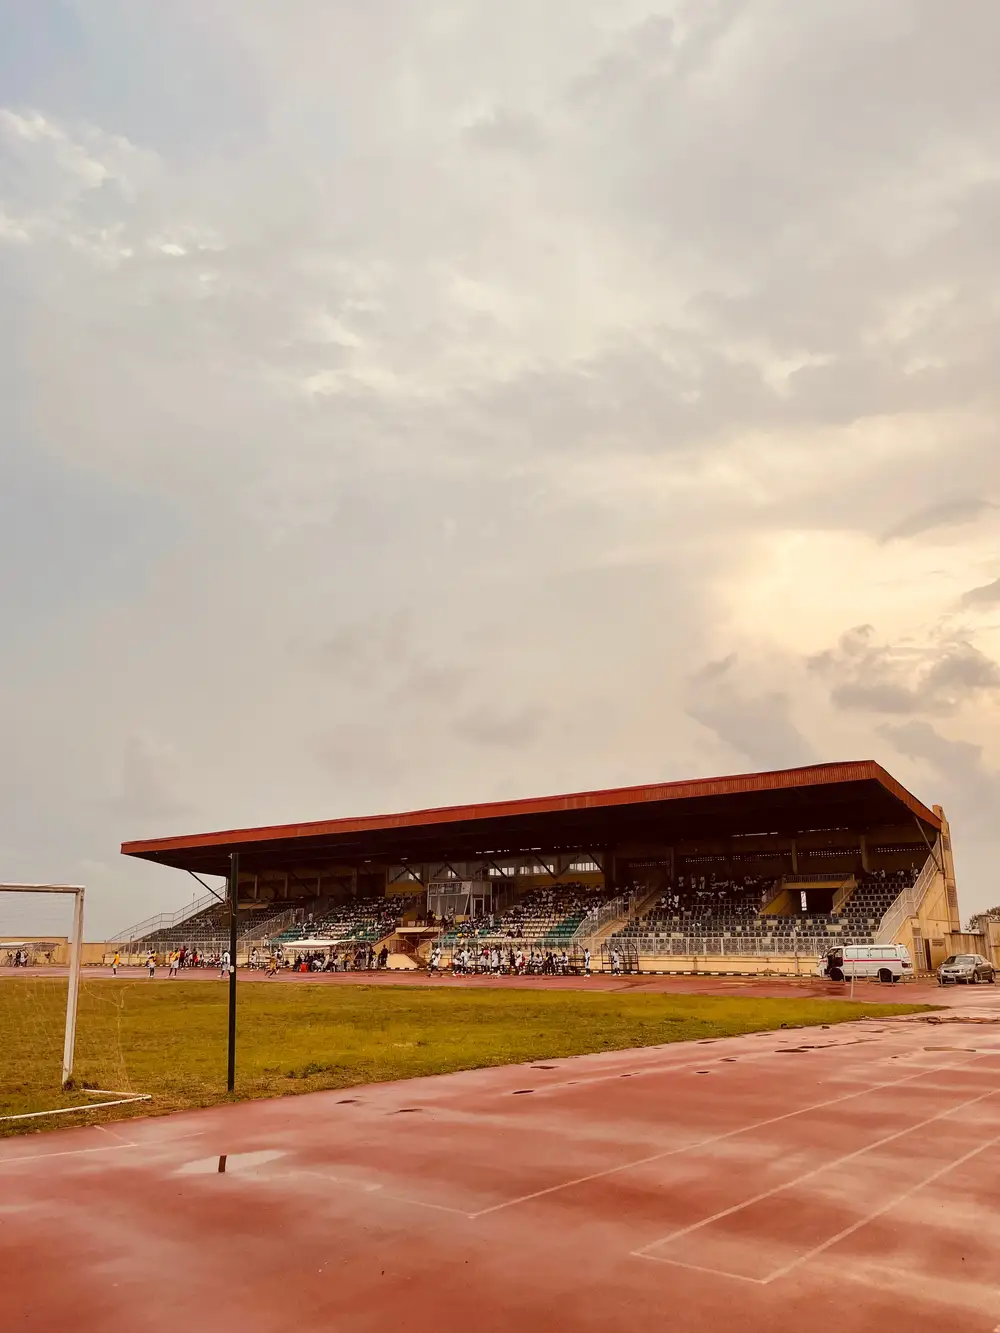 Landscape view of Stadium